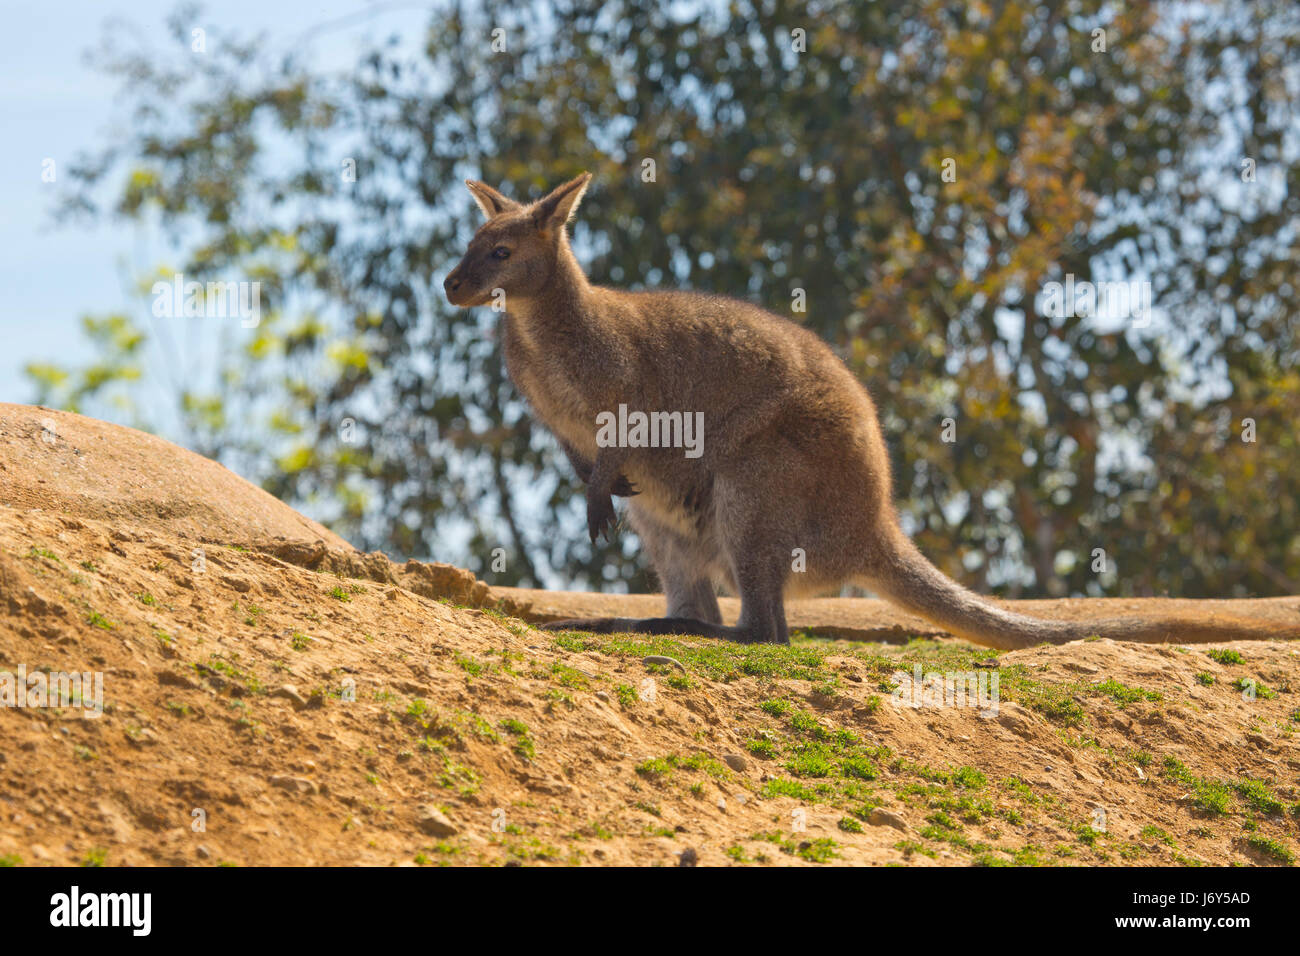 Un wallaby australien assis sur un rocher avec des arbres en arrière-plan Banque D'Images